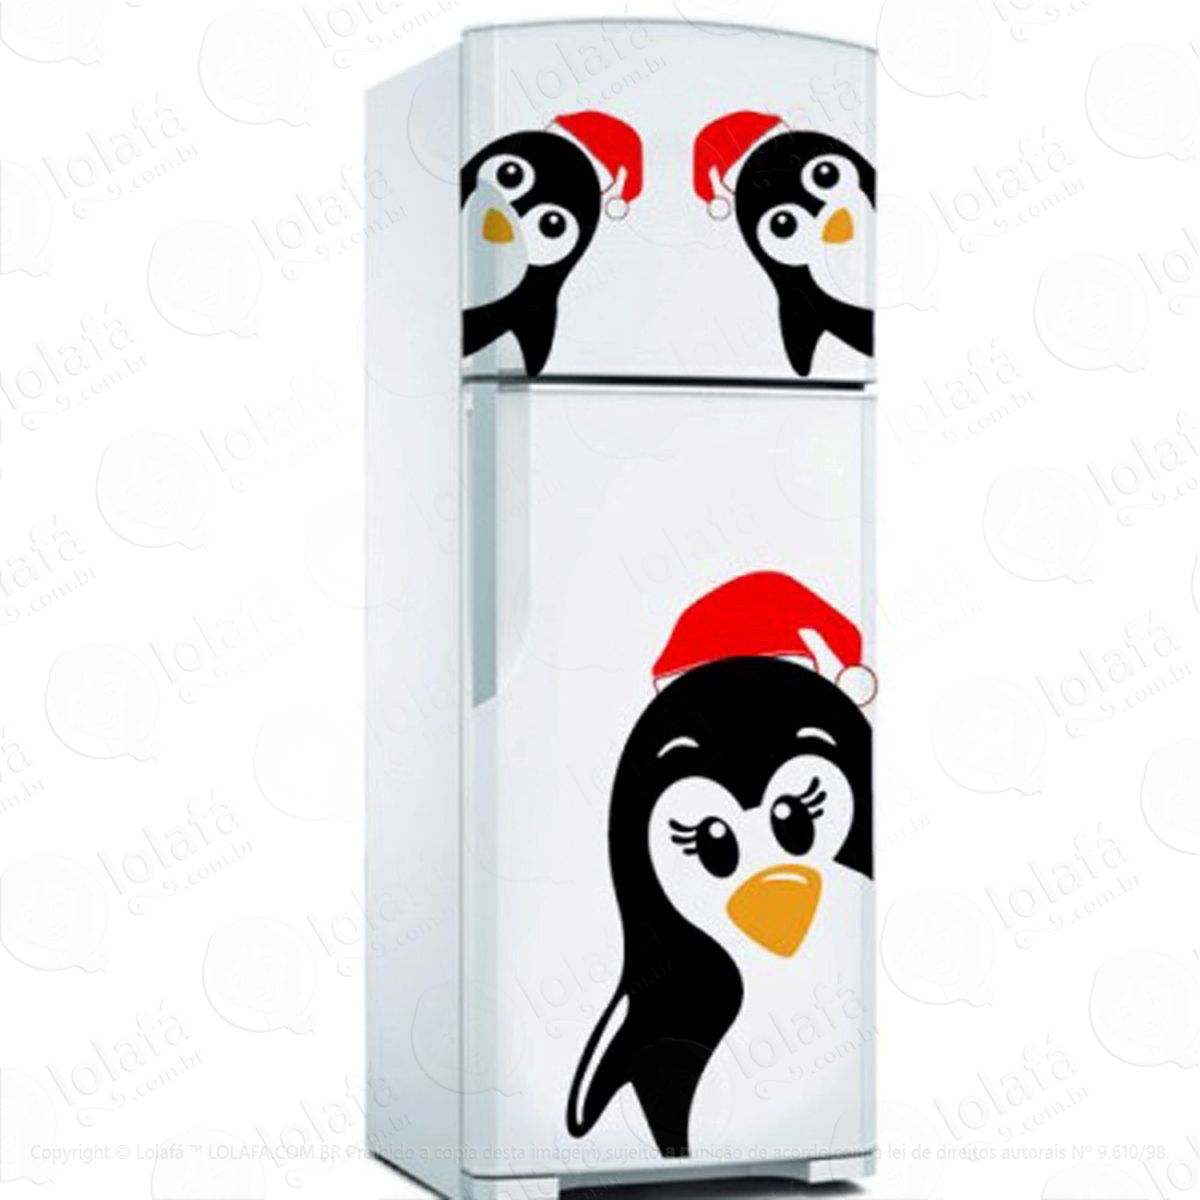 pinguins adesivo de natal para vitrine, parede, porta de vidro - decoração natalina mod:190